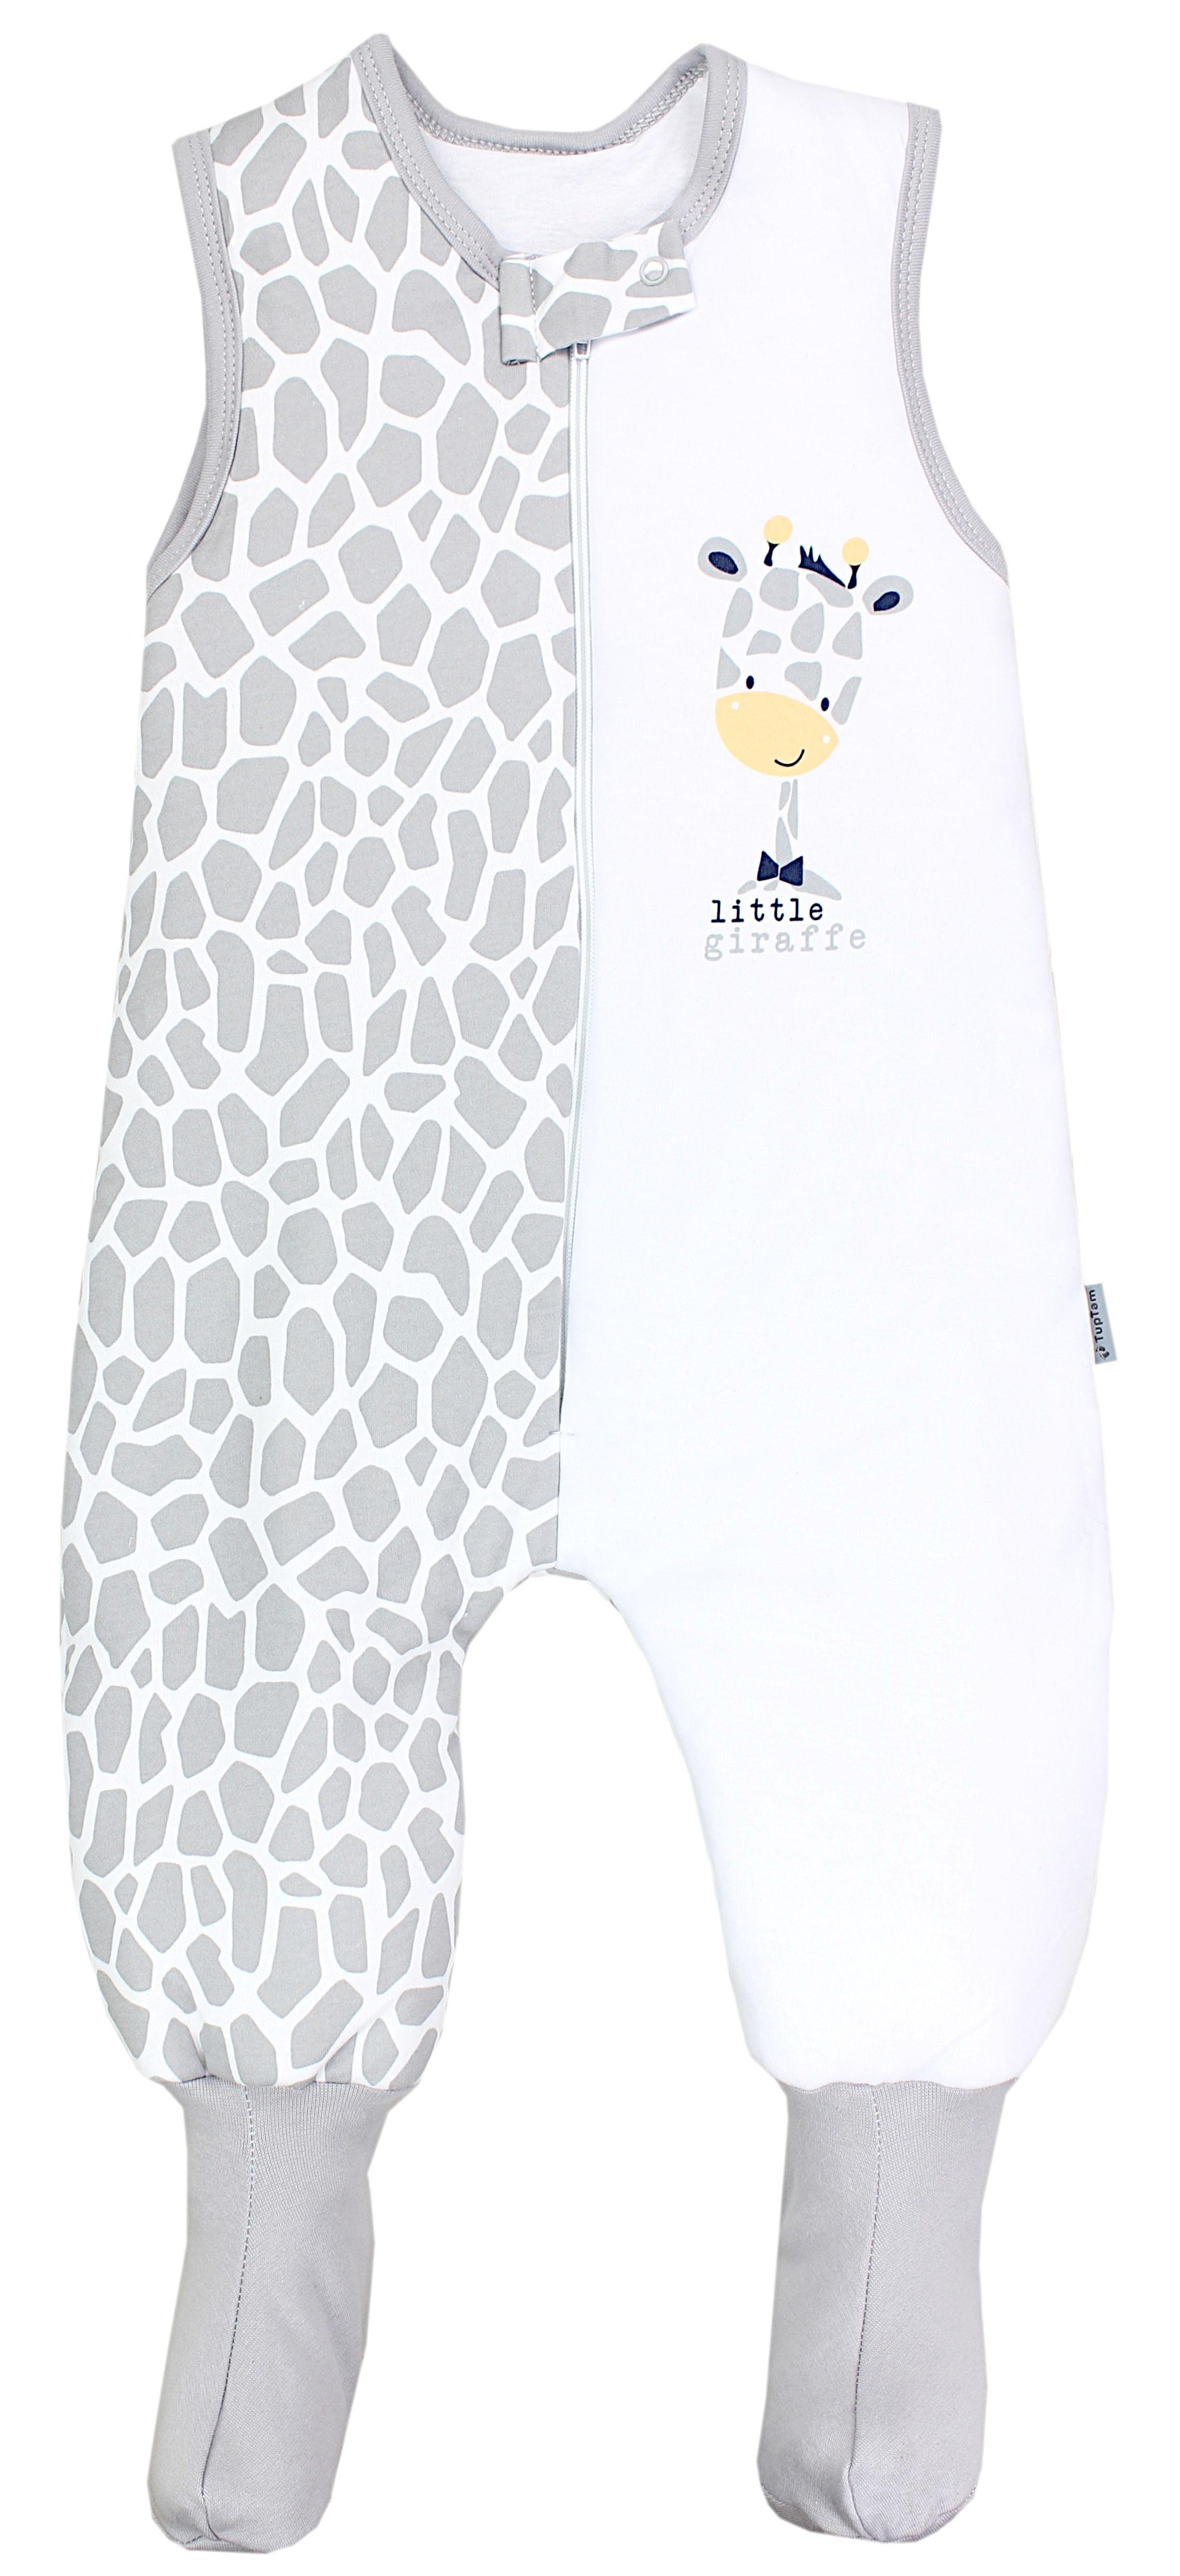 Babyschlafsack Winterschlafsack OEKO-TEX zertifiziert, Beinen und Füßen TOG TupTam 2.5 Giraffe mit